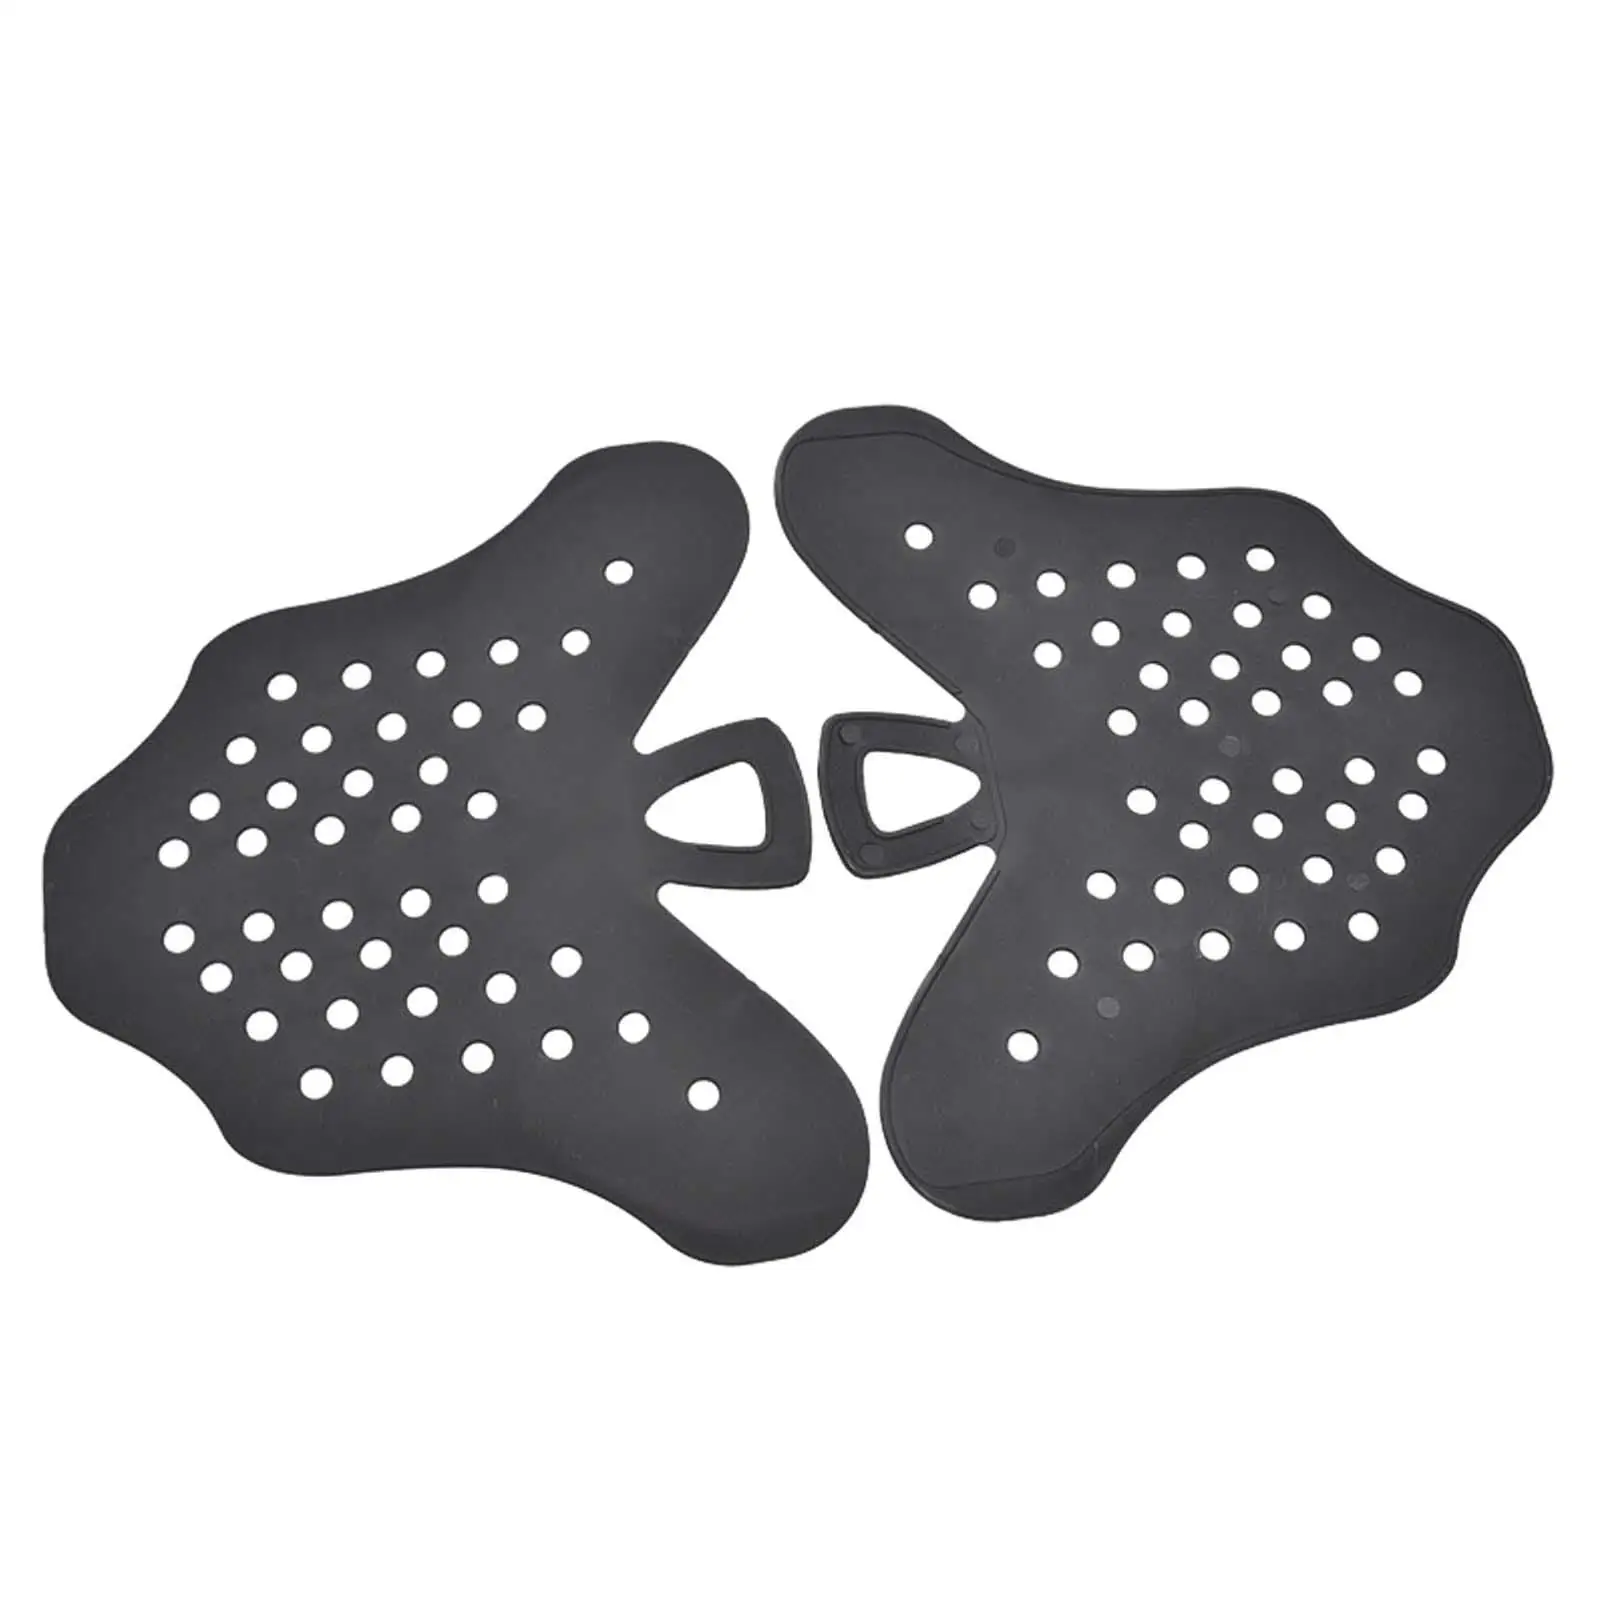  Flip Fin Holder Практичные ласты для дайвинга Обувь Поддержка для спортивных плавательных мужчин - 4